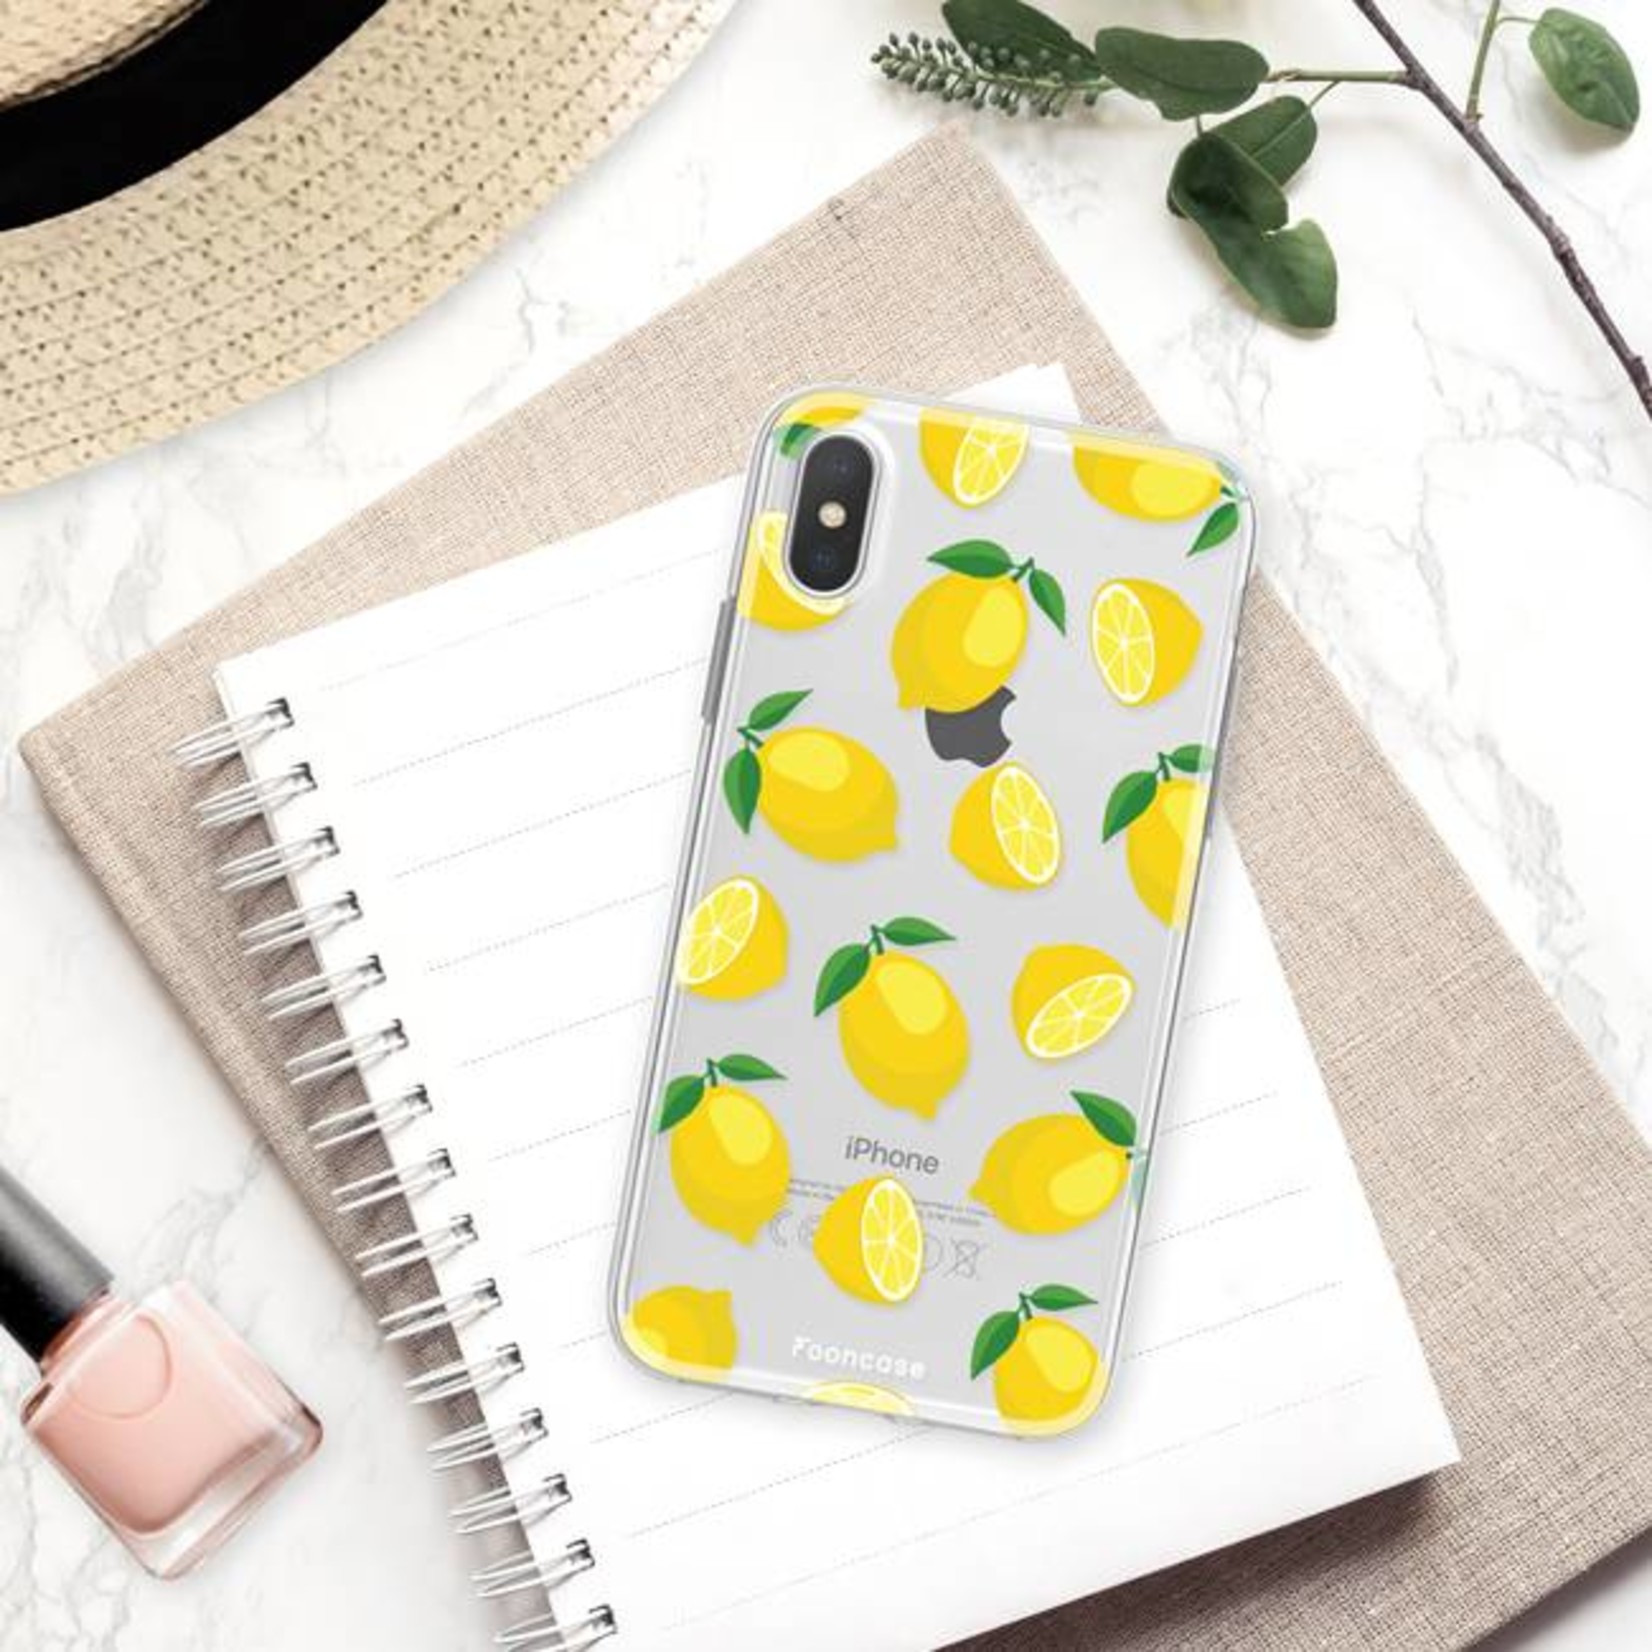 FOONCASE Iphone X - Lemons